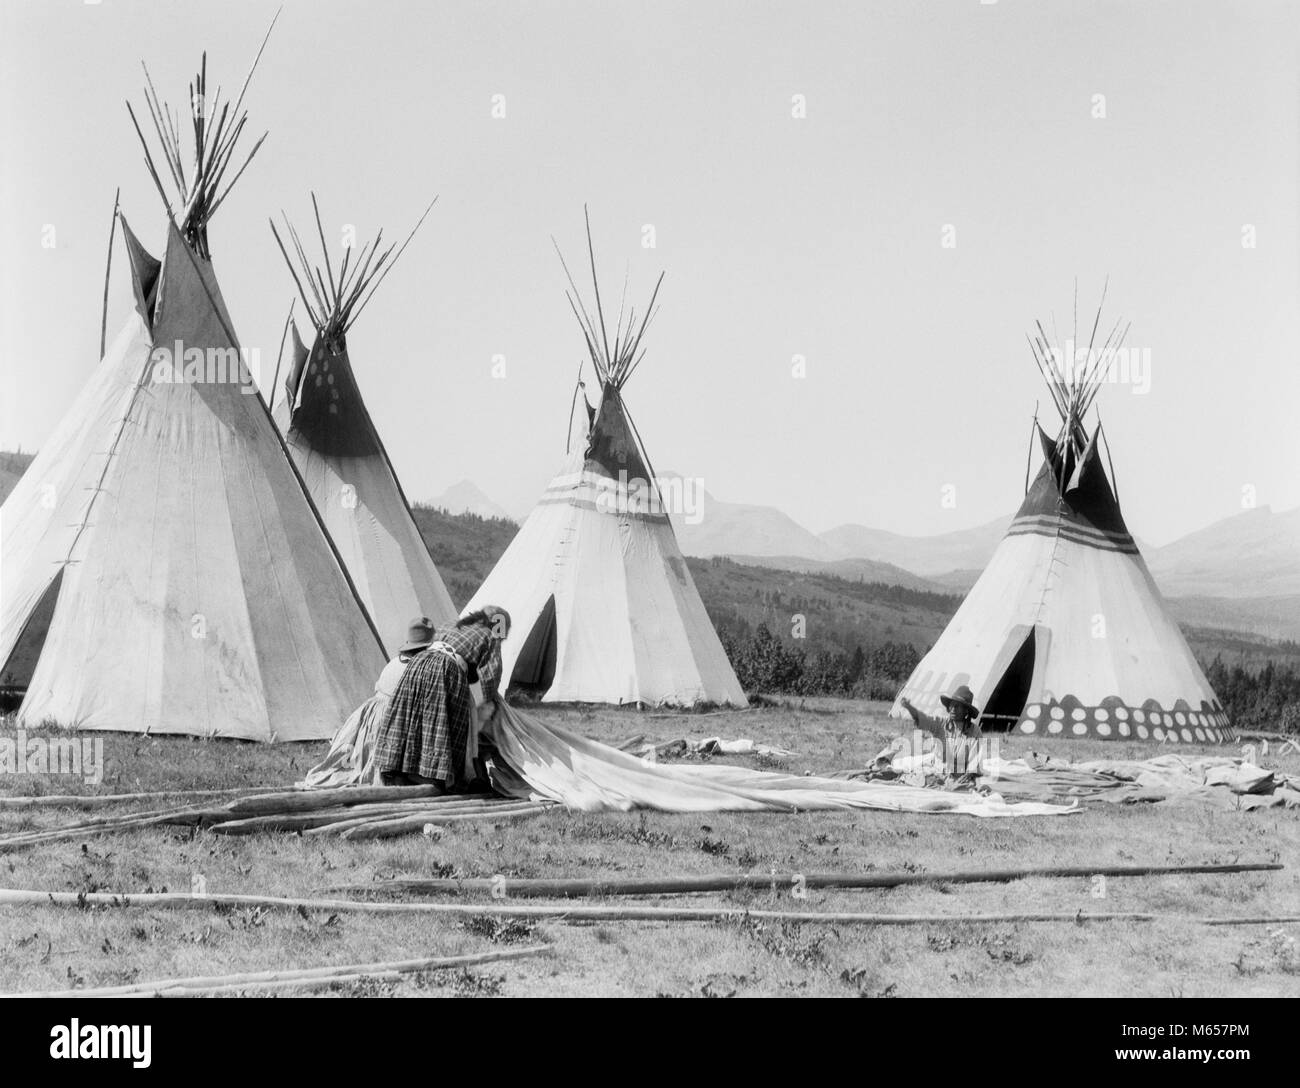 1920er drei gebürtige indianische Frauen von Sioux Tribe auf TEPEE POLE UND BLENDET MONTANA USA-i 355 HAR 001 HARS 30-35 JAHRE ZIELE NORDAMERIKANISCHEN POLE TIPI ÄUSSERE UNTERSTÜTZUNG TEPEE ZUSAMMENARBEIT STAMM MT NATIVE AMERICAN ROCKY MOUNTAINS KLEINE GRUPPE VON MENSCHEN konische Mitte nach Mitte der erwachsenen Frau gebürtige Amerikaner B&W SCHWARZ UND WEISS konische Form verbirgt sich indigene ALTMODISCHE PERSONEN Stockfoto